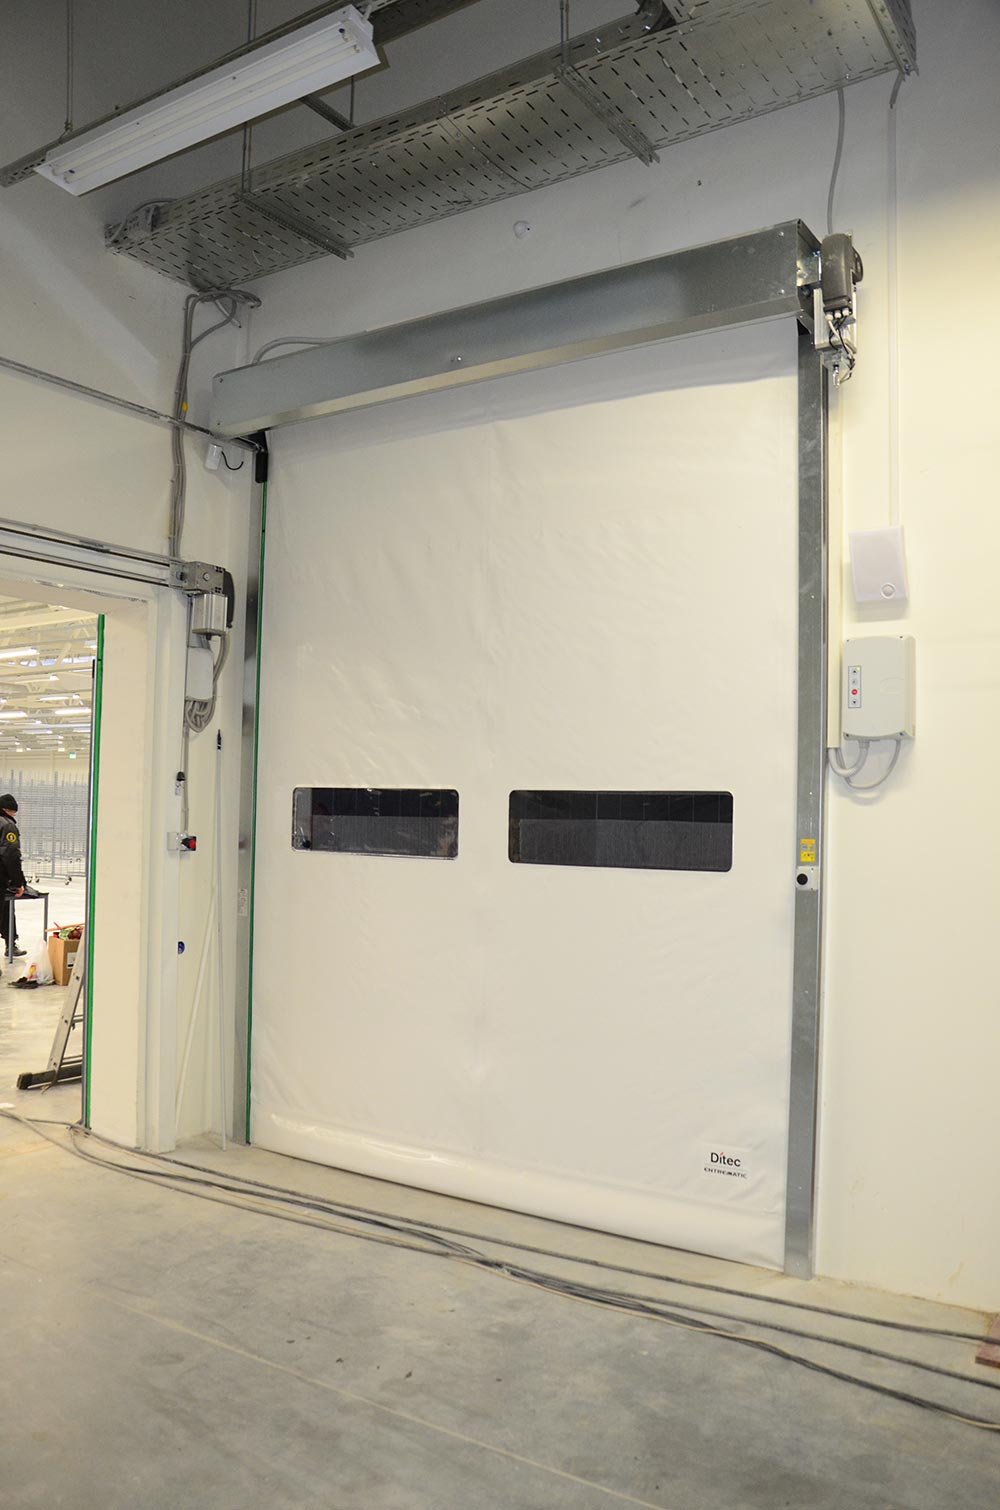 Скоростные ворота DITEC SMART RESET из ПВХ полотна, с двумя прозрачными вставками